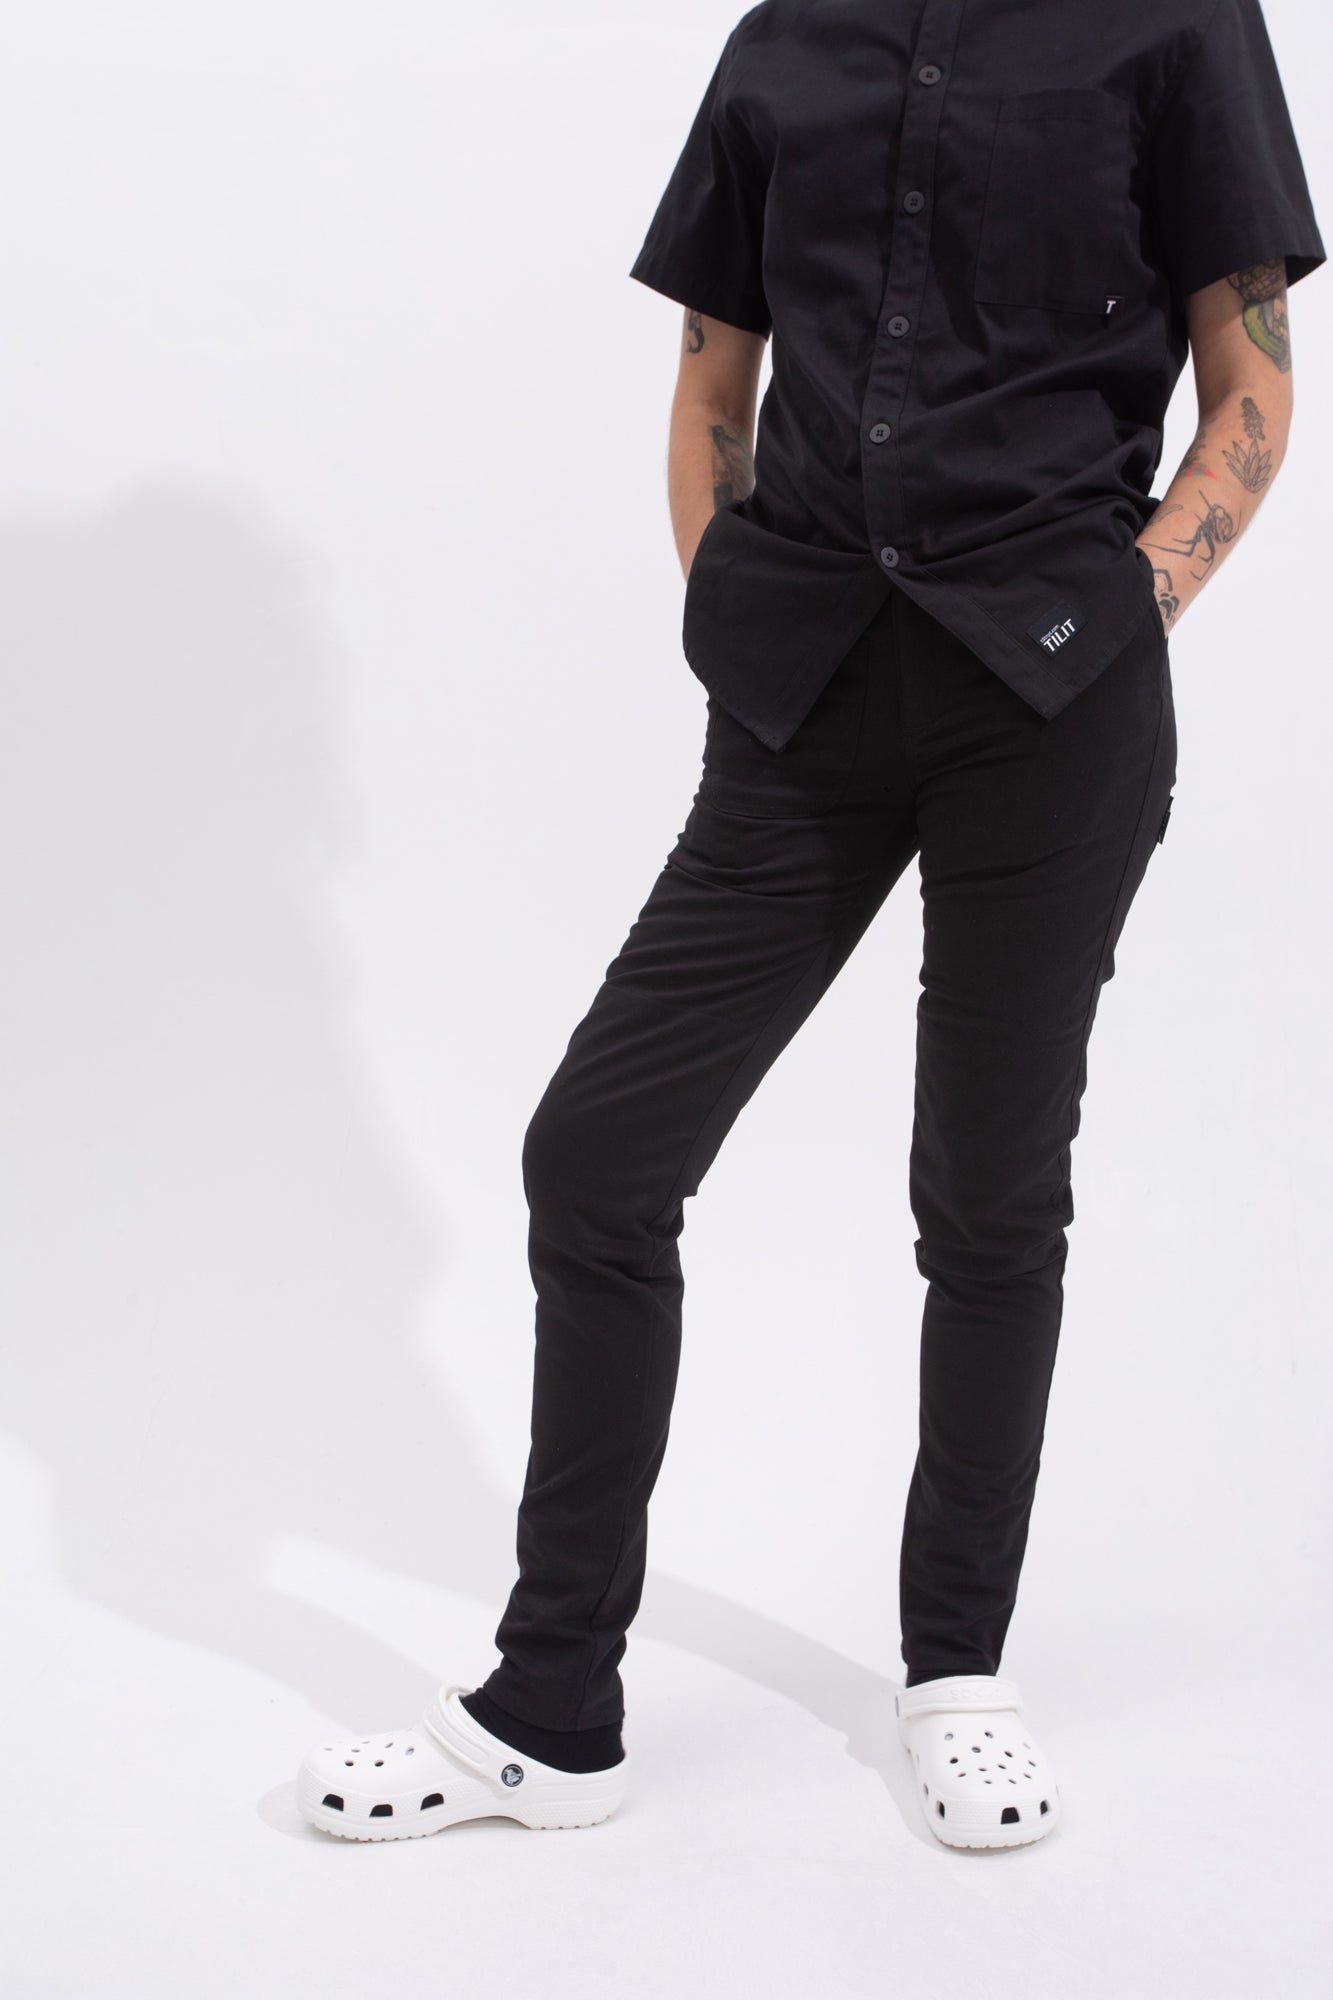 Black Chefs Pants | Modern Slim Fit Uniform Pants – Tilit